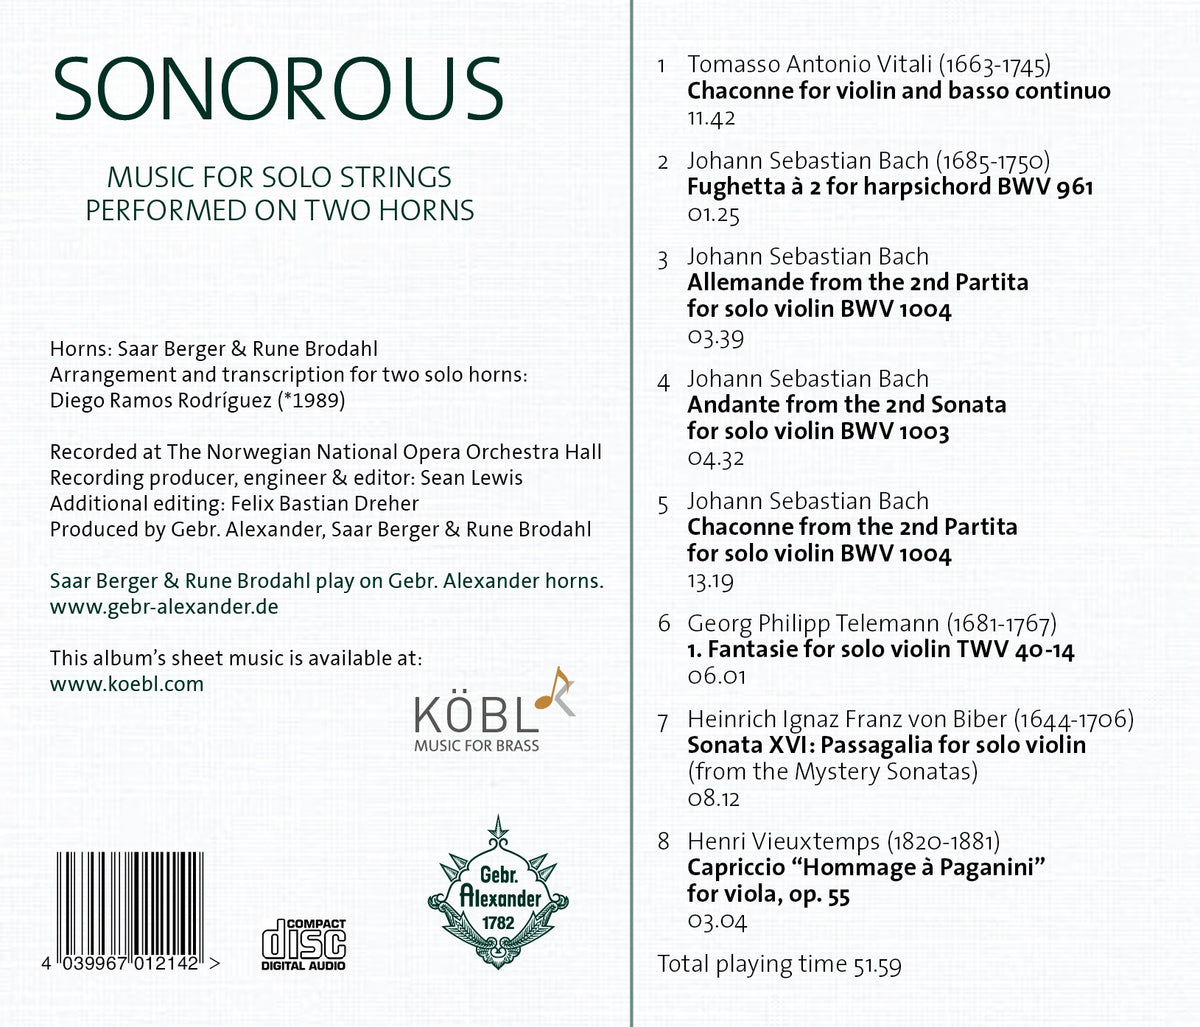 CD: Sonorous for 2 Horns by Saar Berger & Rune Brodahl